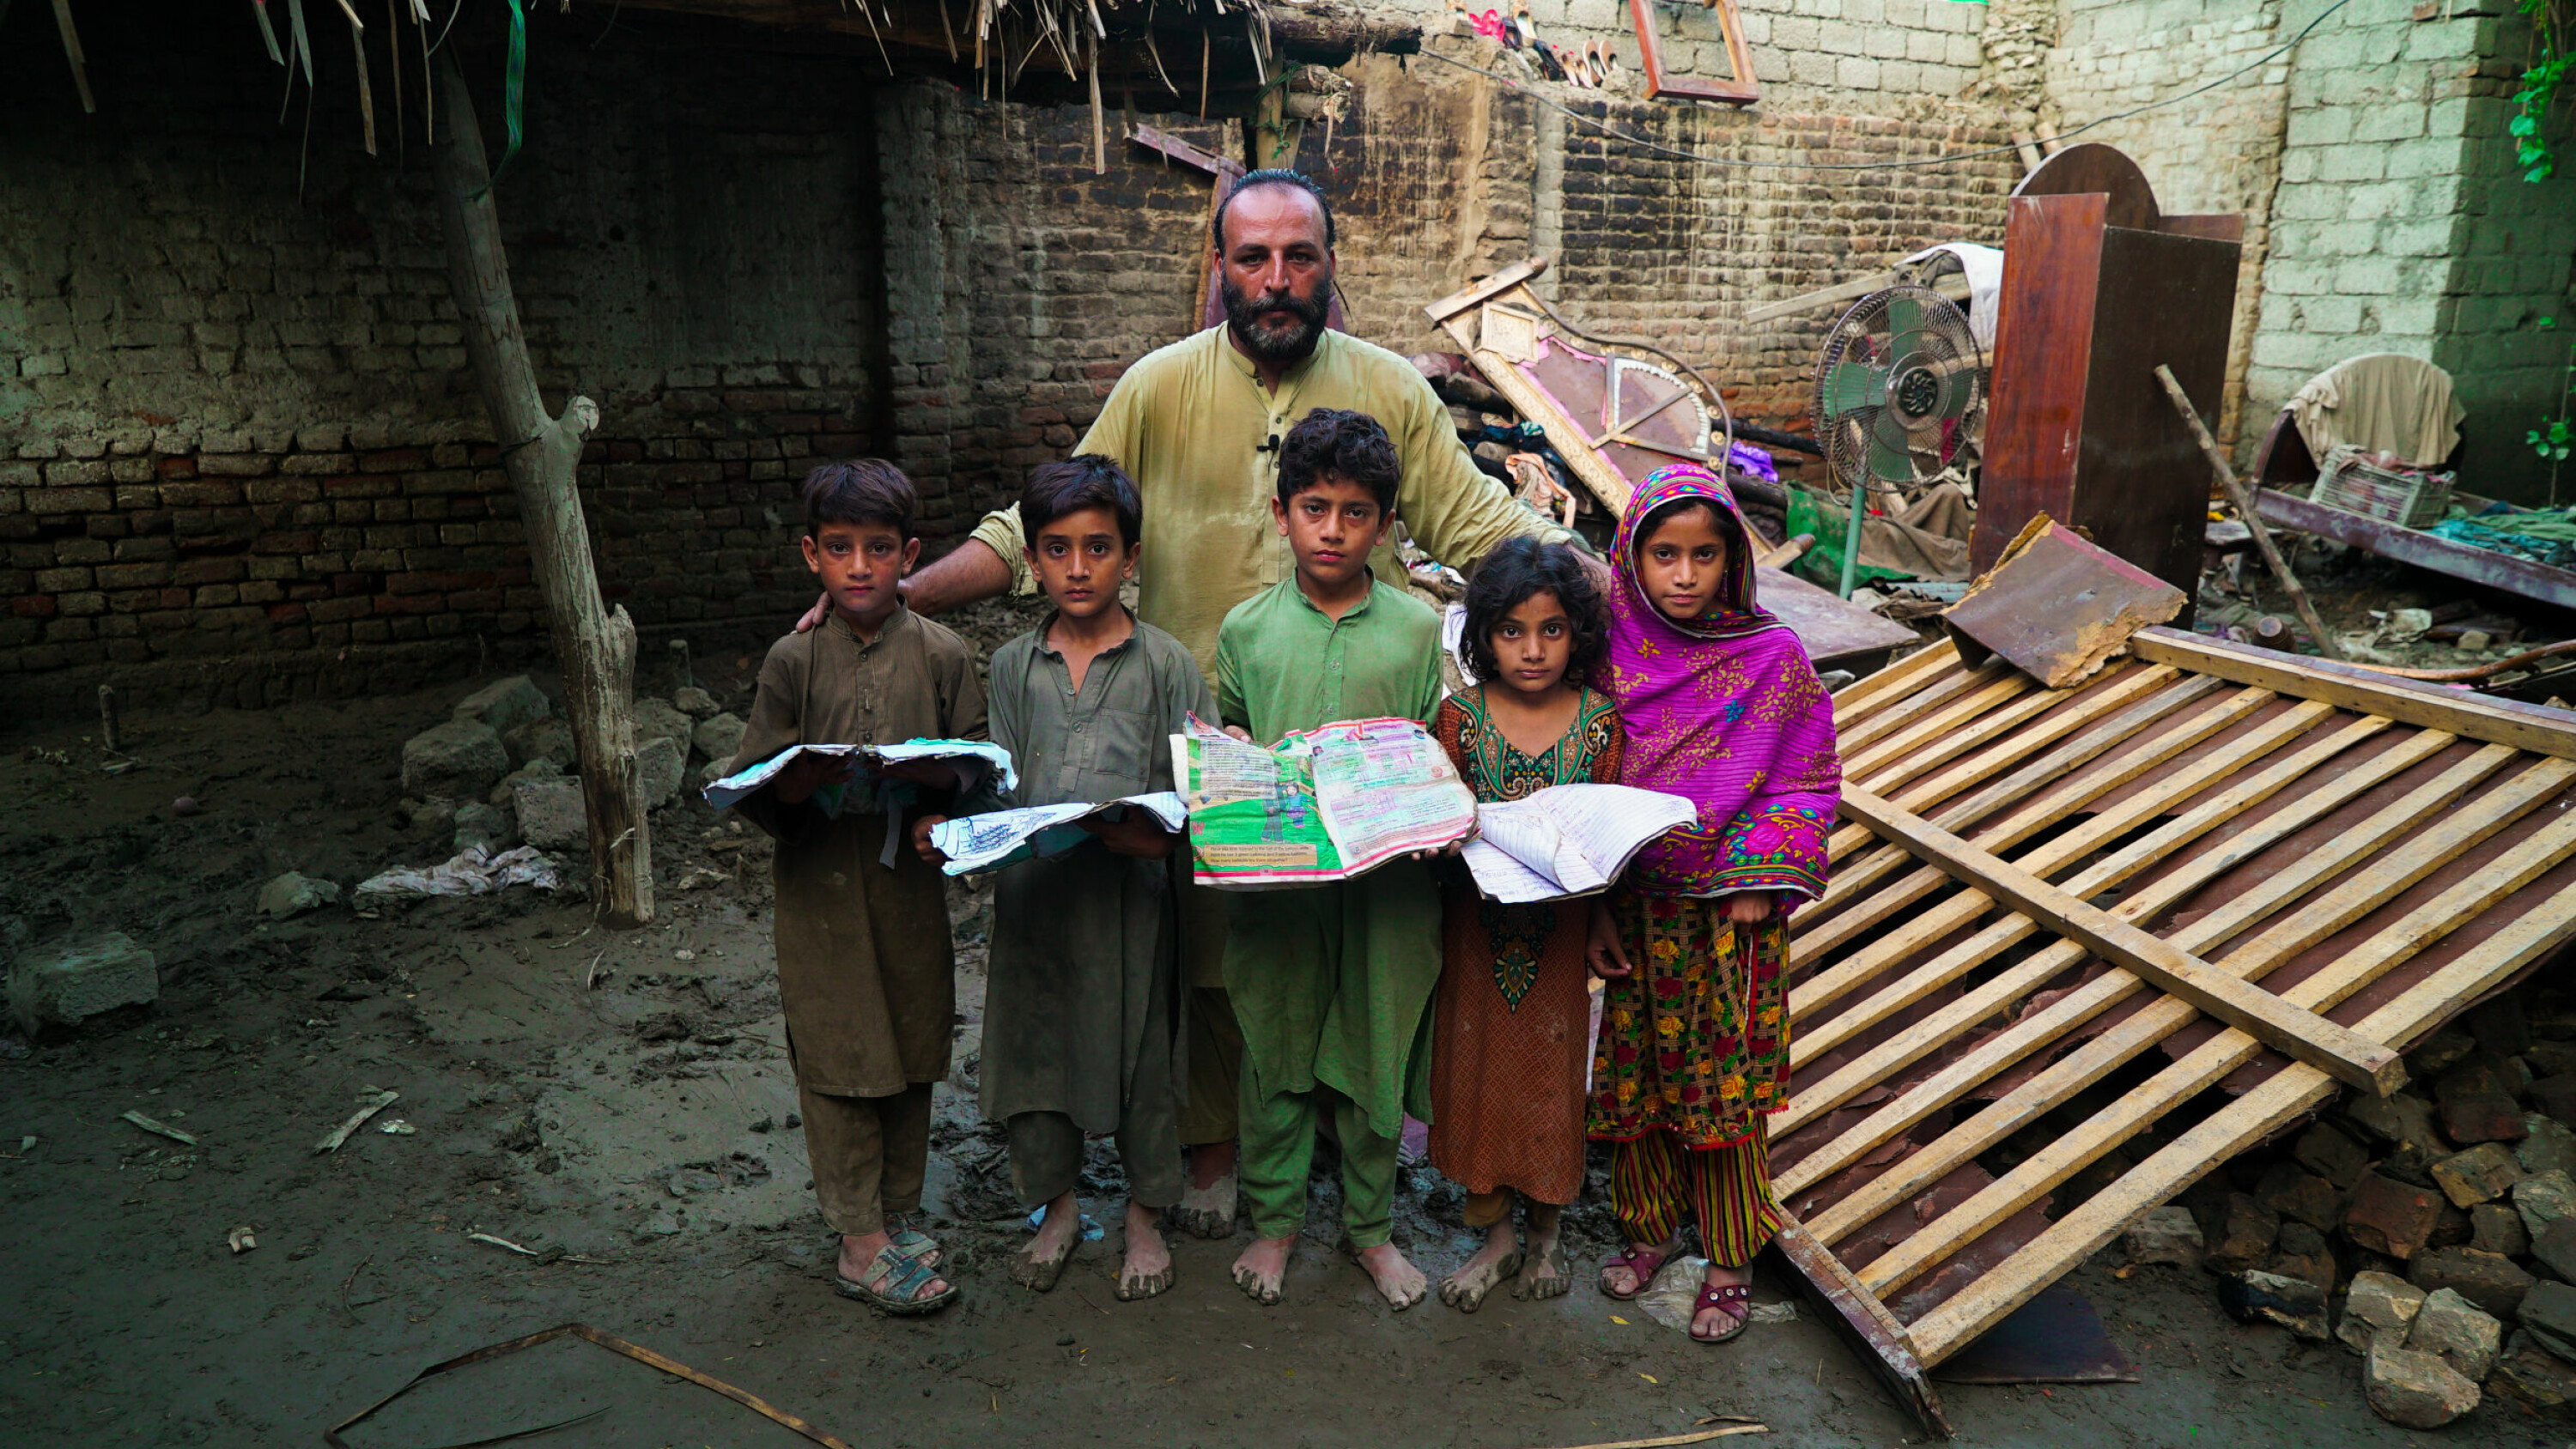 En familie fotografen Muhammad Haris møtte da han tok bilder for Verdens matvareprogram nær byen Charsadda. Familien er foreløpig i sikkerhet, men huset og eiendelene, som de fem barnas skolebøker, har gått tapt i det som regnes for å være den verste flommen i Pakistans historie.